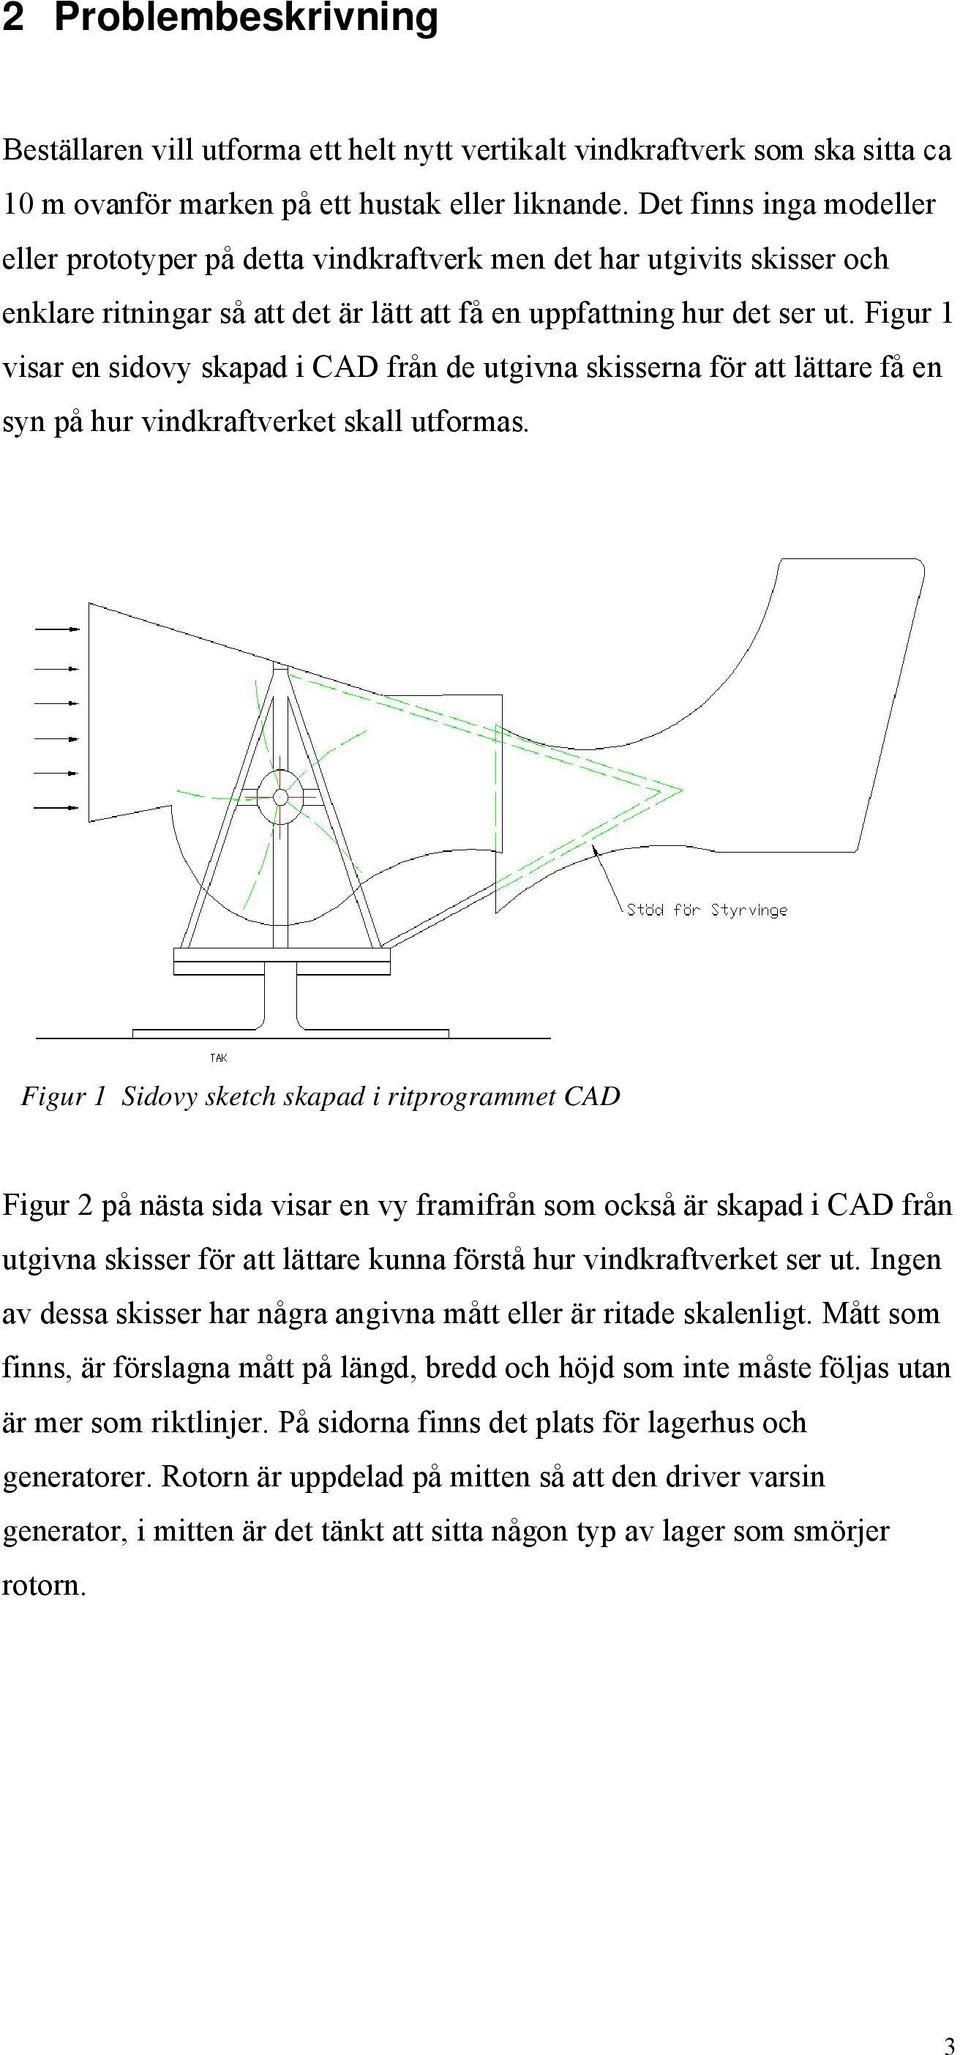 Figur 1 visar en sidovy skapad i CAD från de utgivna skisserna för att lättare få en syn på hur vindkraftverket skall utformas.